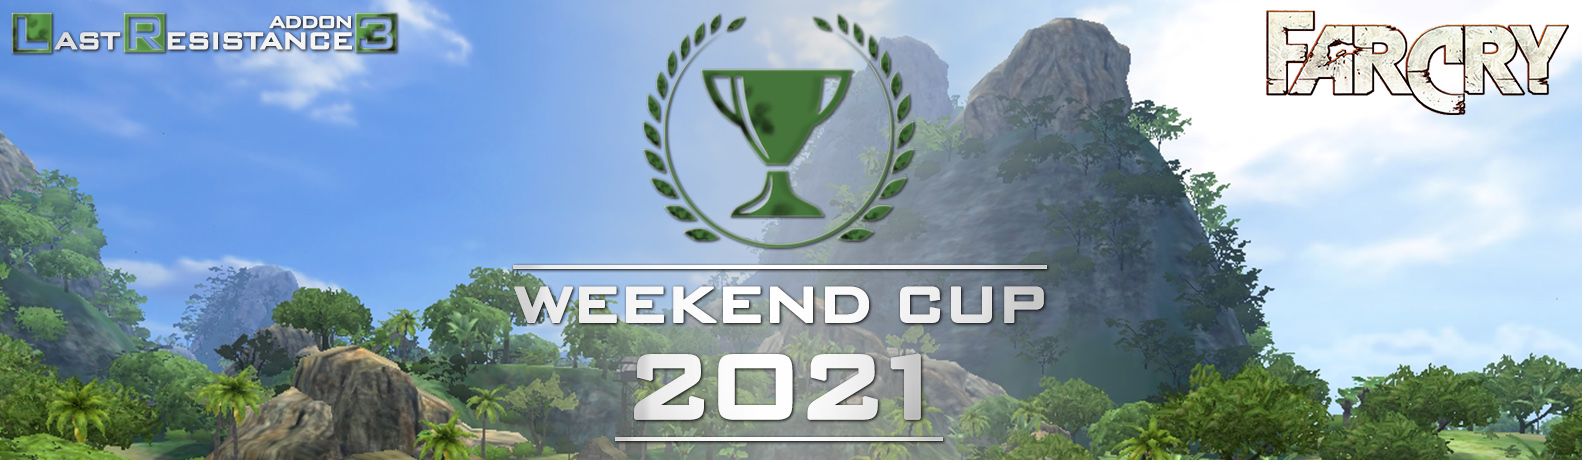 LRv3_Weekend_Cup_2021.jpg